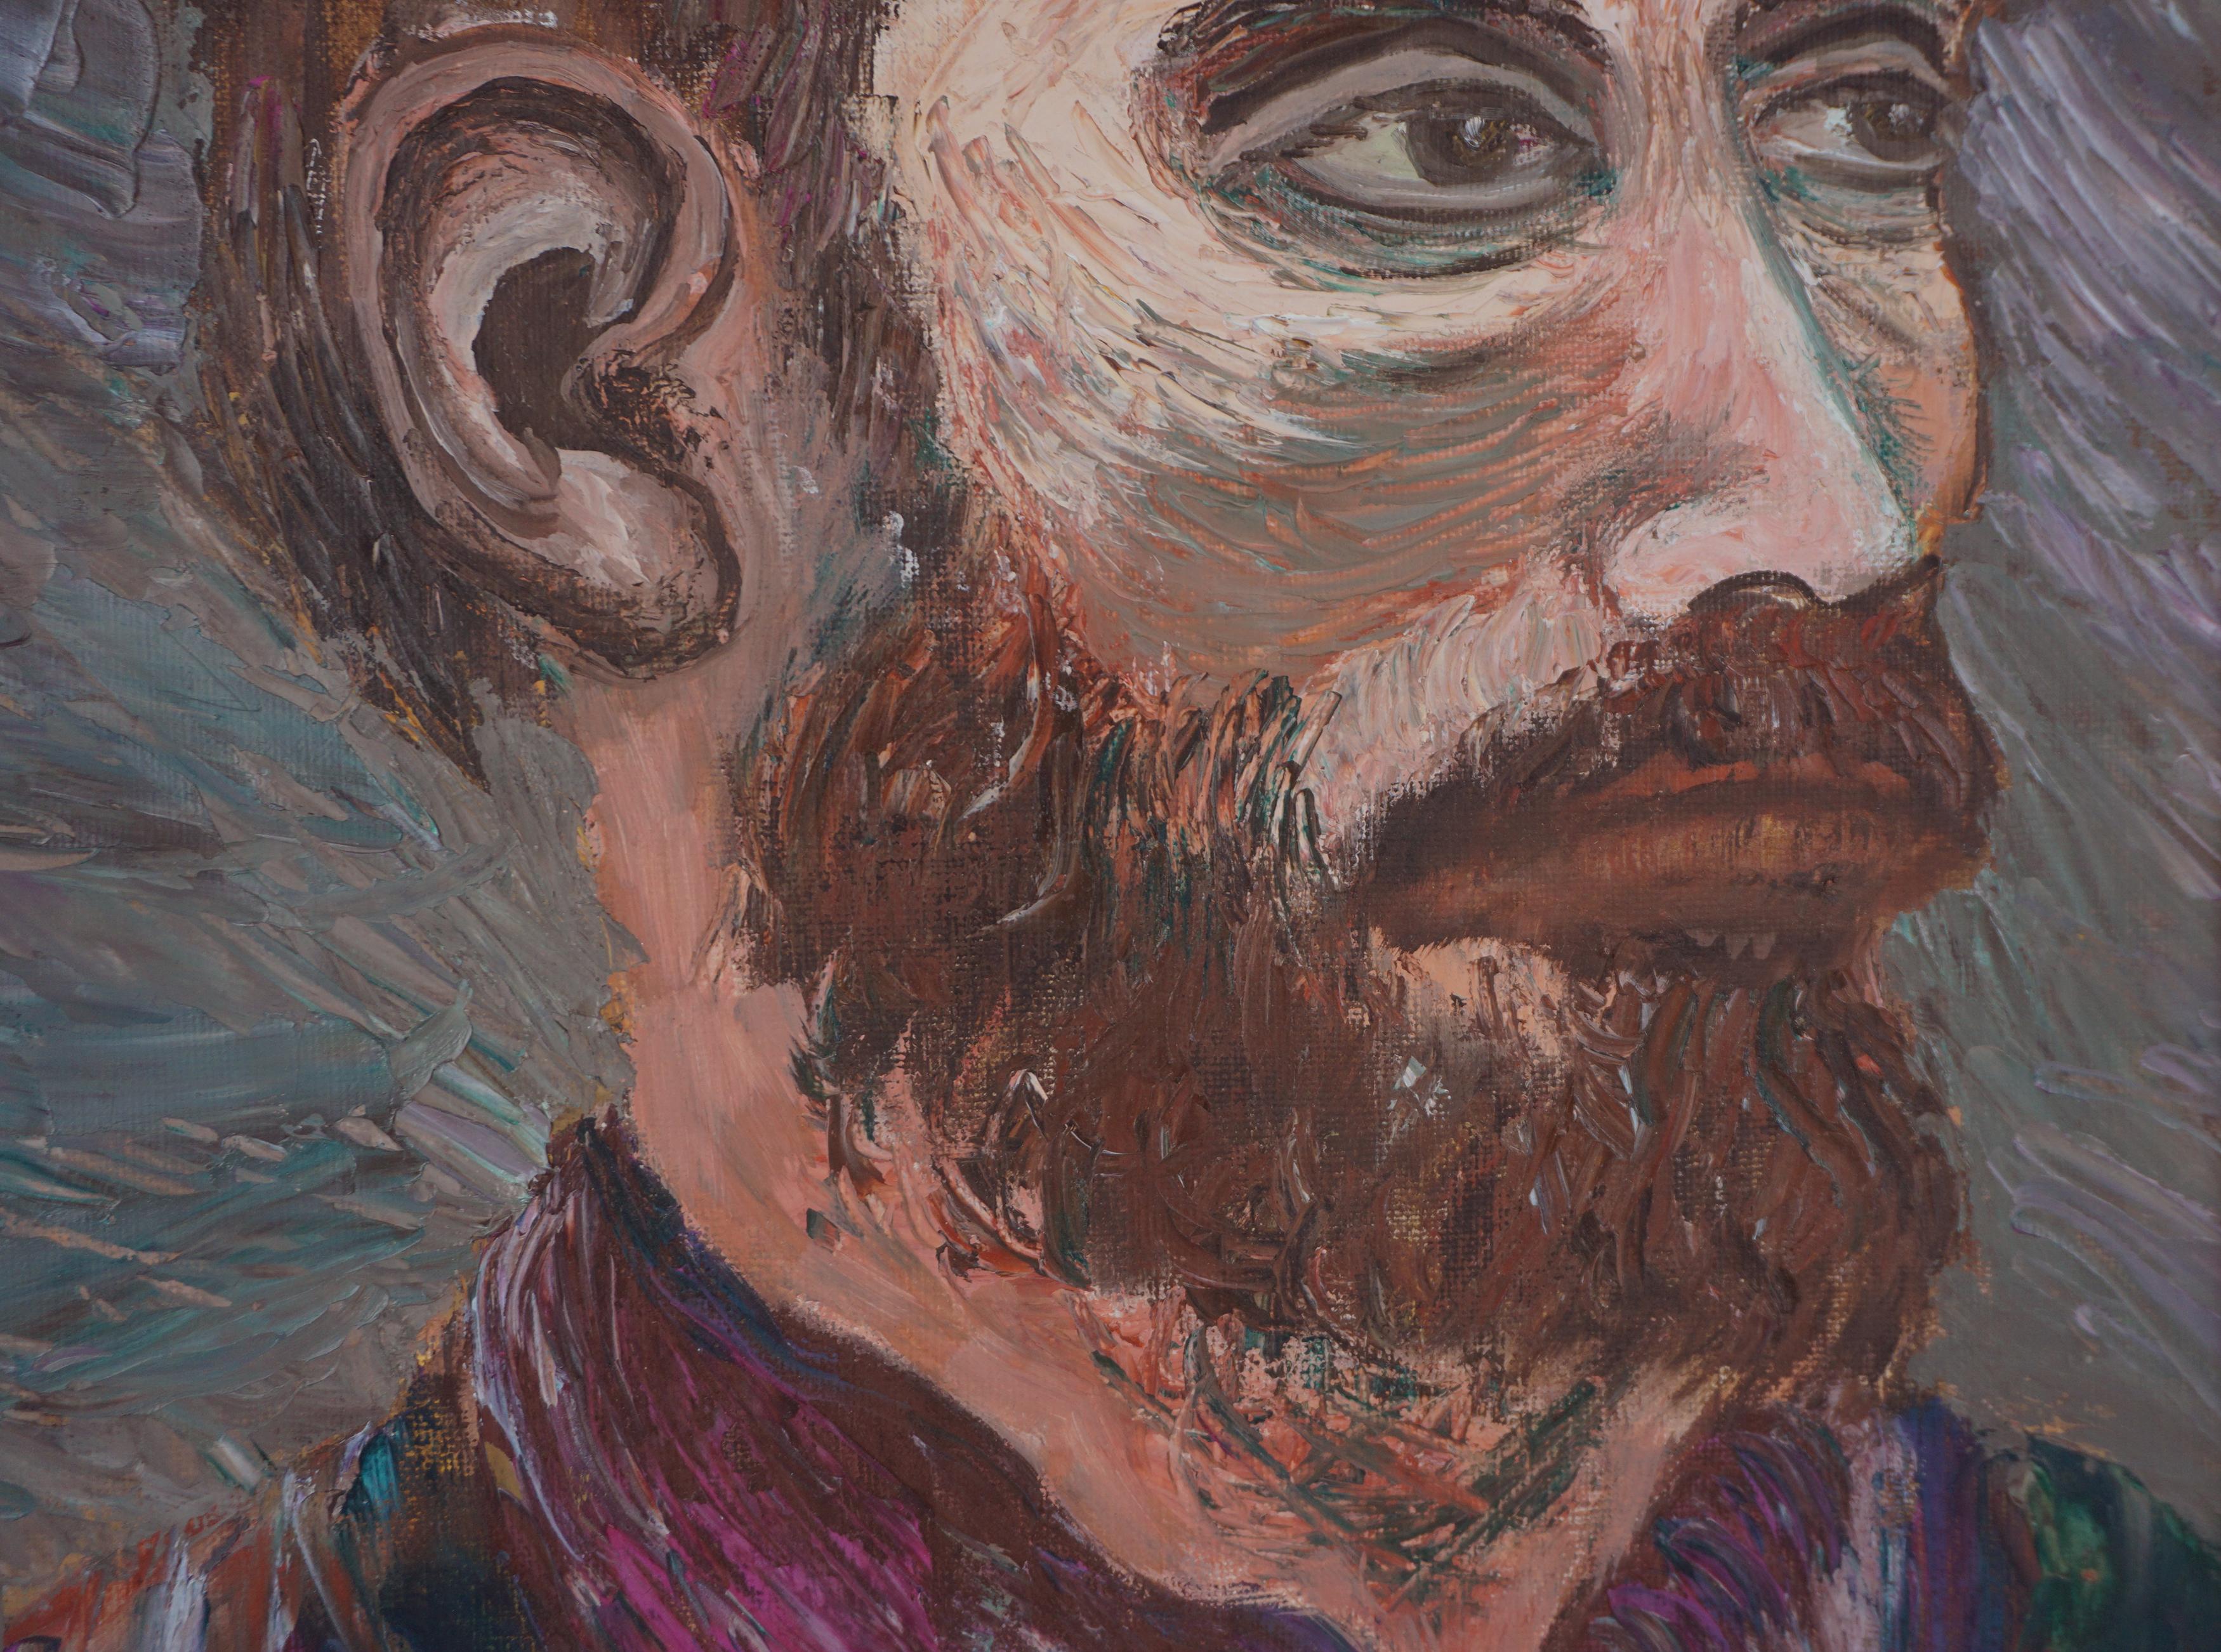 Portrait expressionniste abstrait du milieu du siècle d'un homme à la barbe

Original expressionniste abstrait du milieu du siècle représentant un homme avec une barbe par l'artiste californienne Genevieve Rogers (américaine, 1904 - 1984), vers les